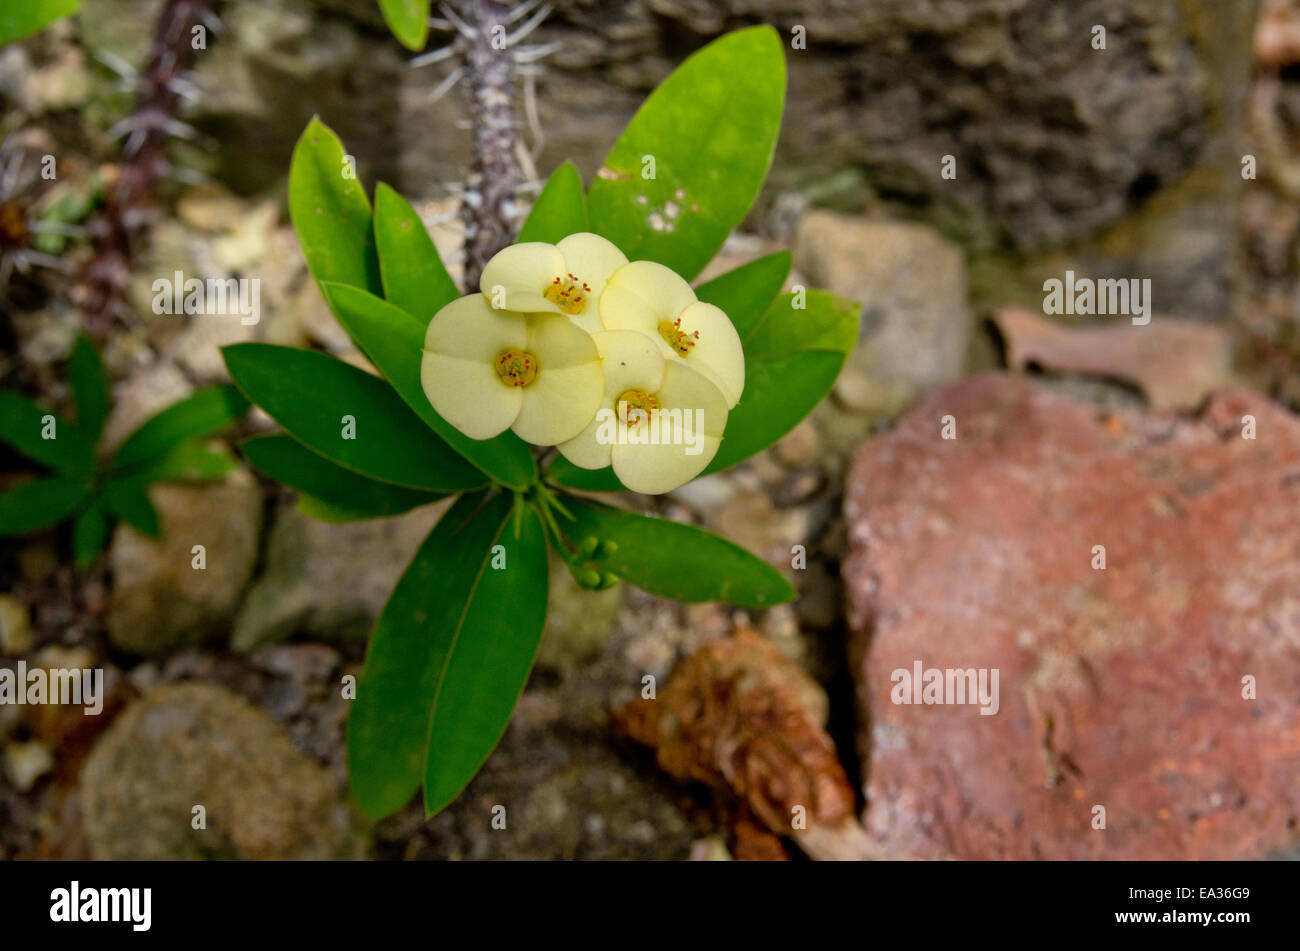 Euphorbia Milii Des Moul splendens Stock Photo